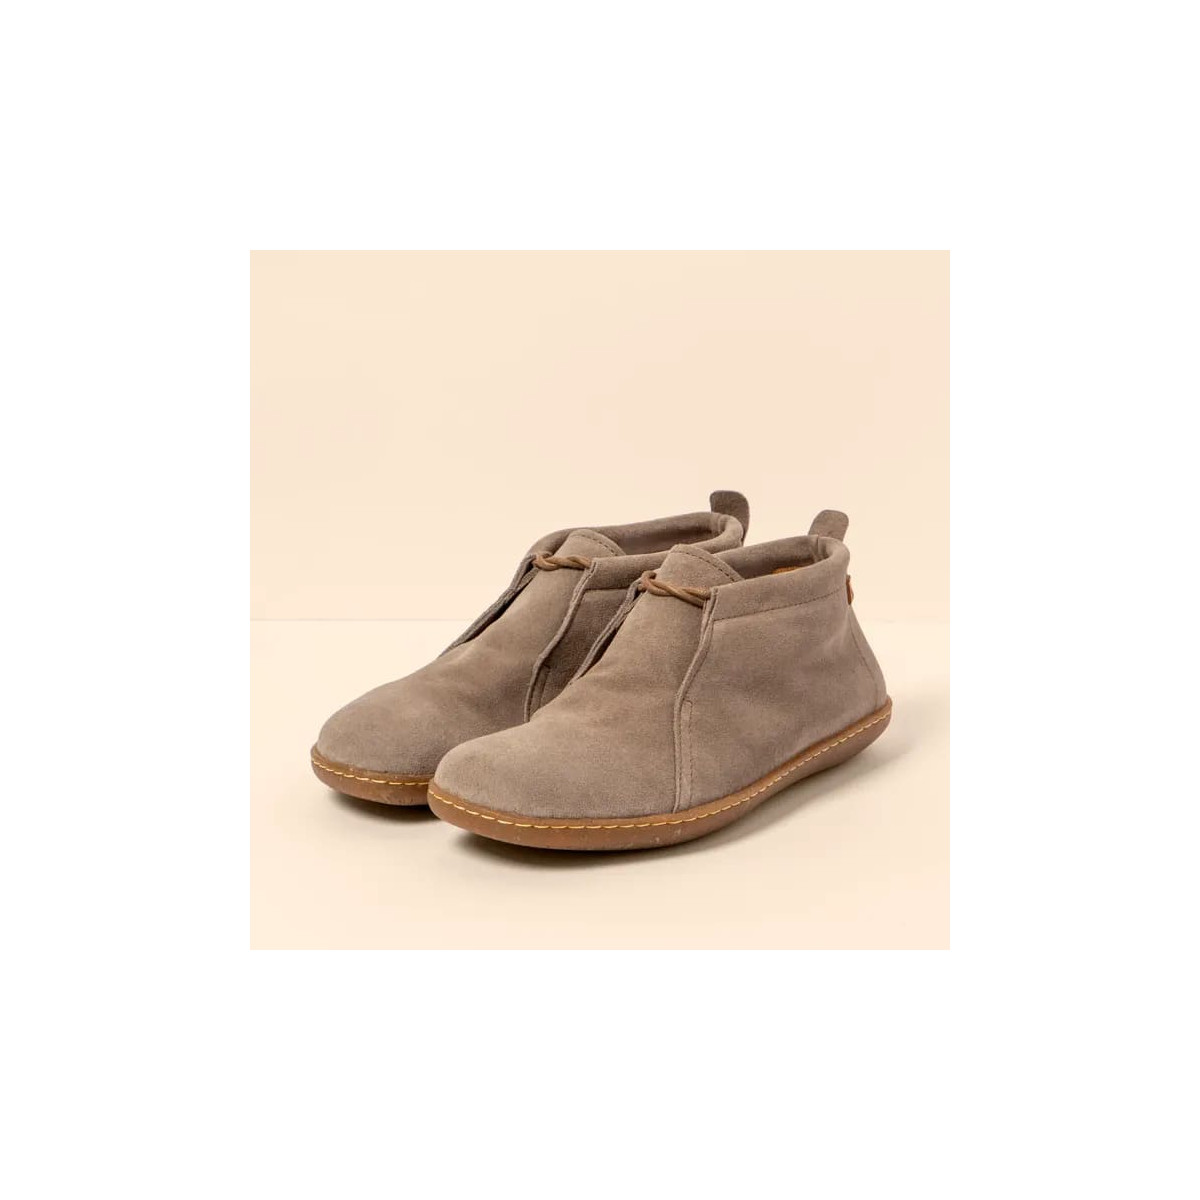 Chaussures confortables lacées en daim - Taupe - El naturalista